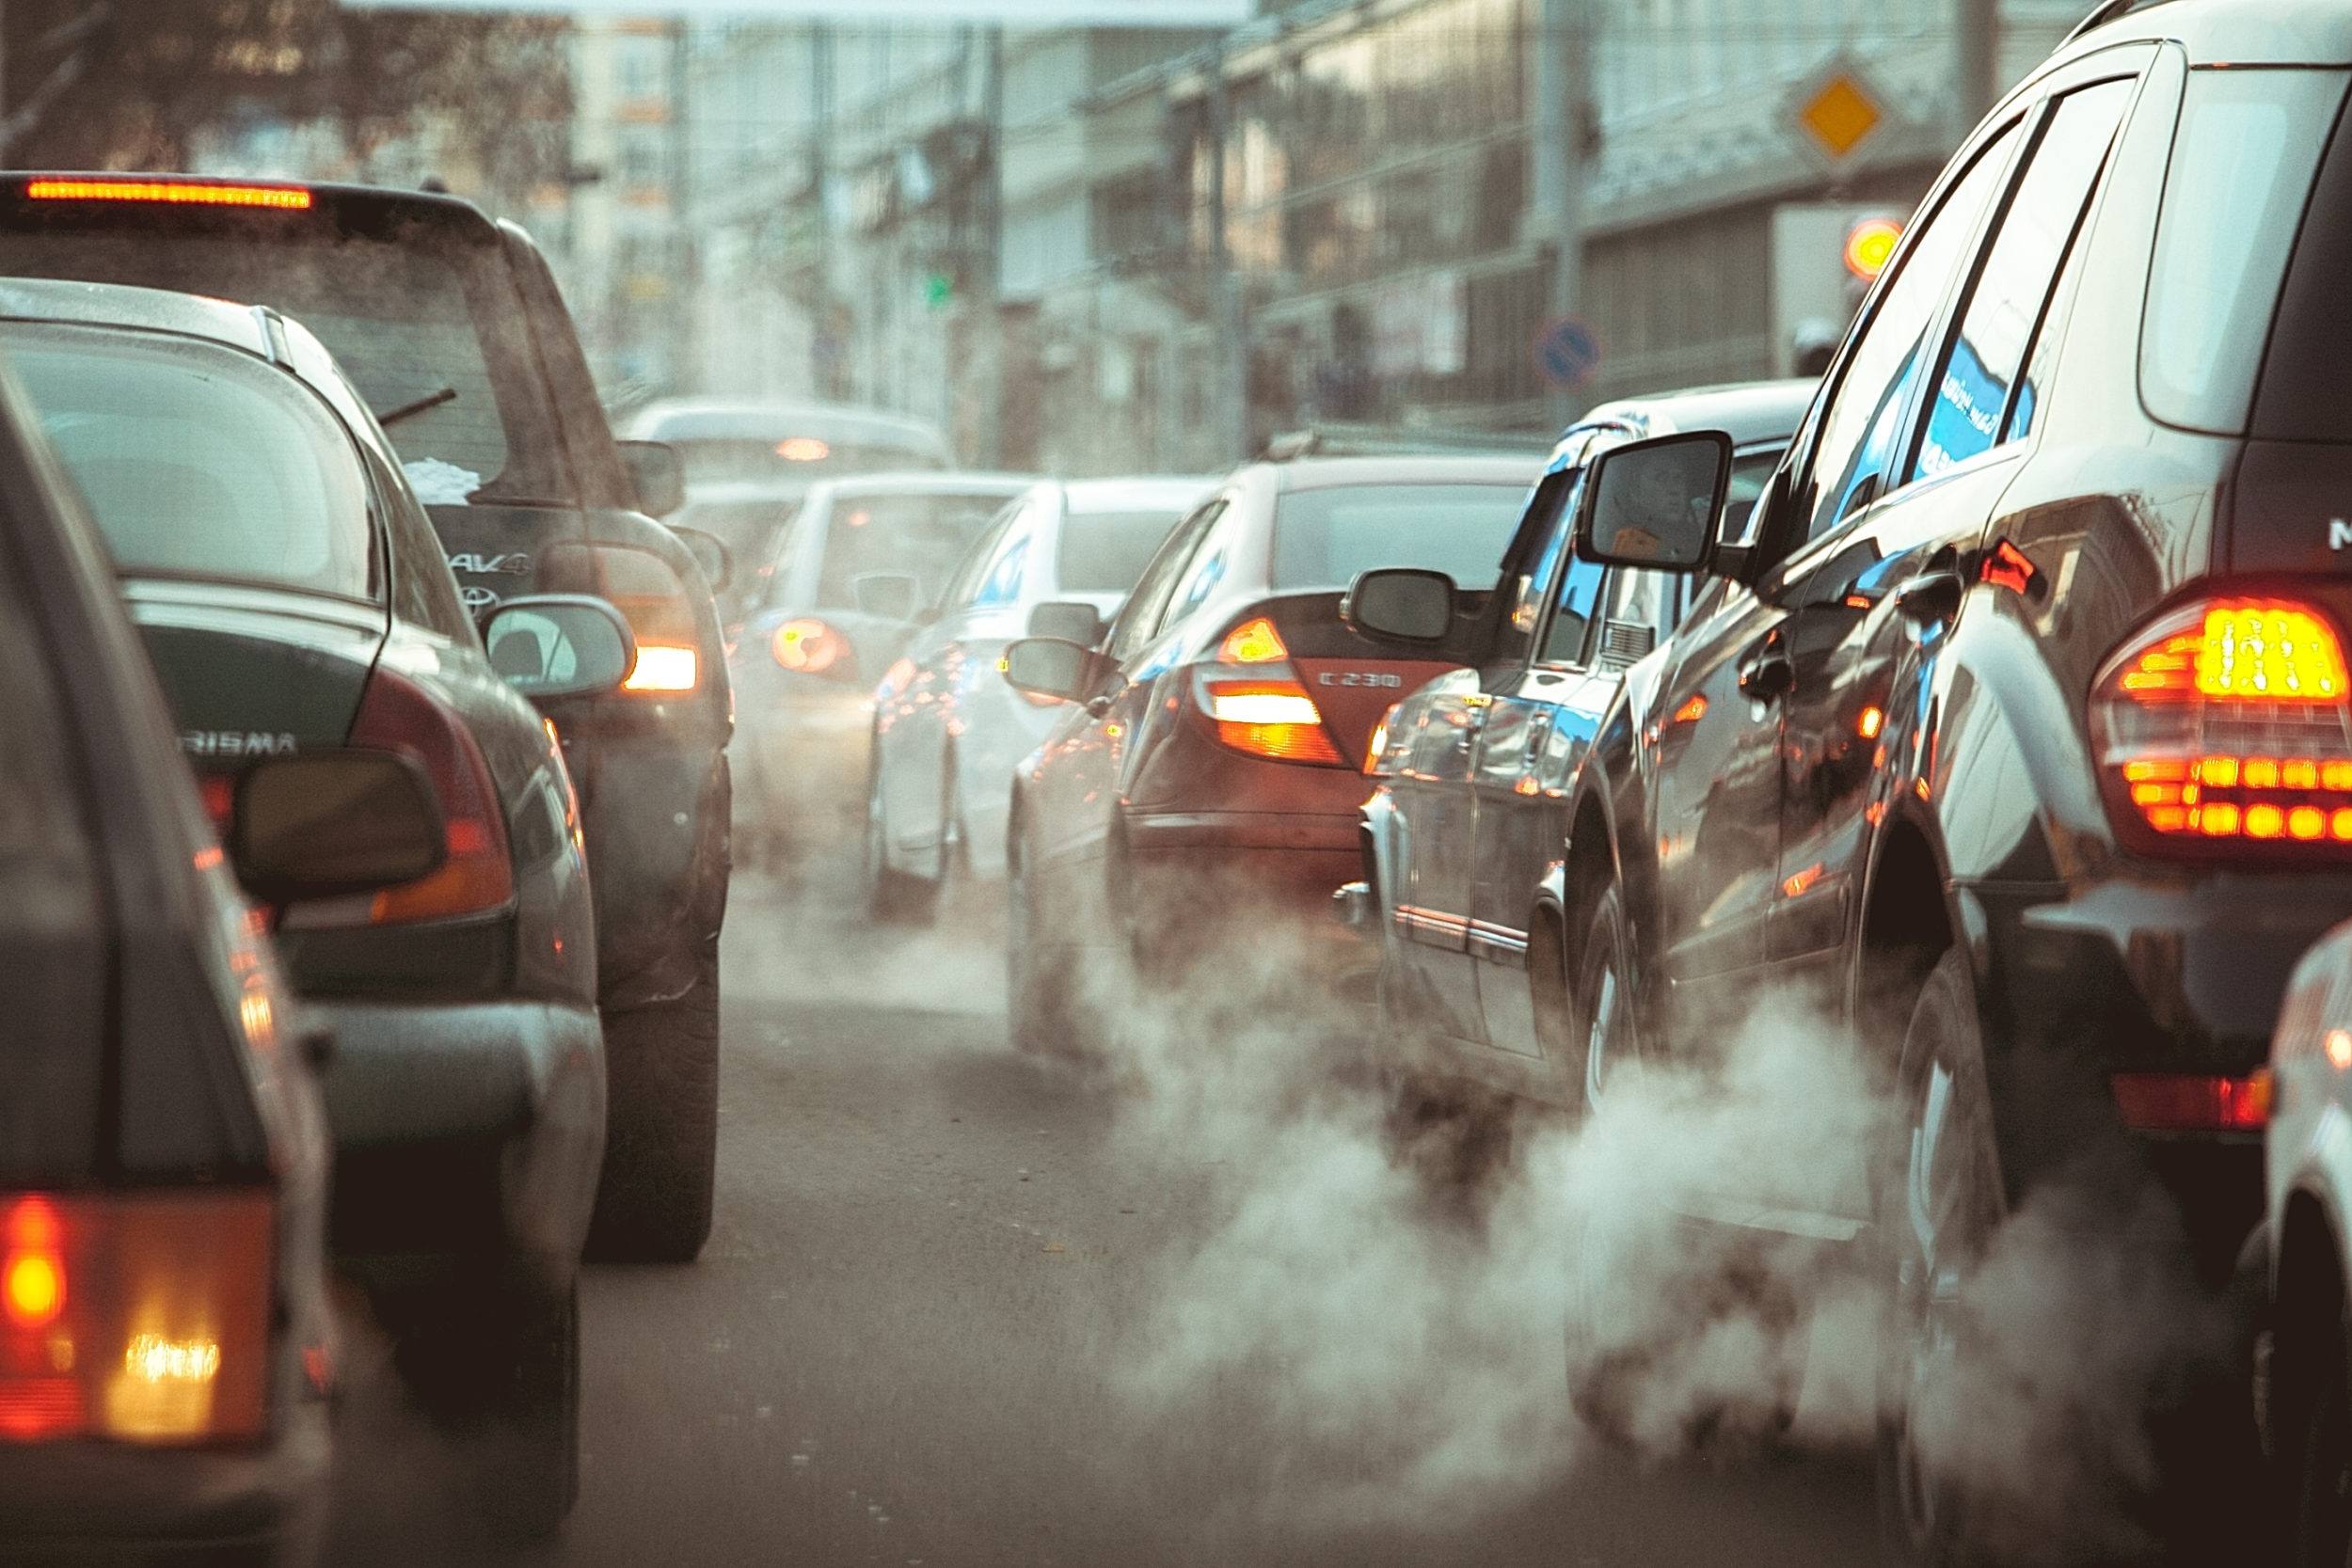   Ô nhiễm từ khói xe có thể làm tăng nguy cơ huyết áp cao, tiền sản giật ở phụ nữ mang thai (Ảnh minh họa)  